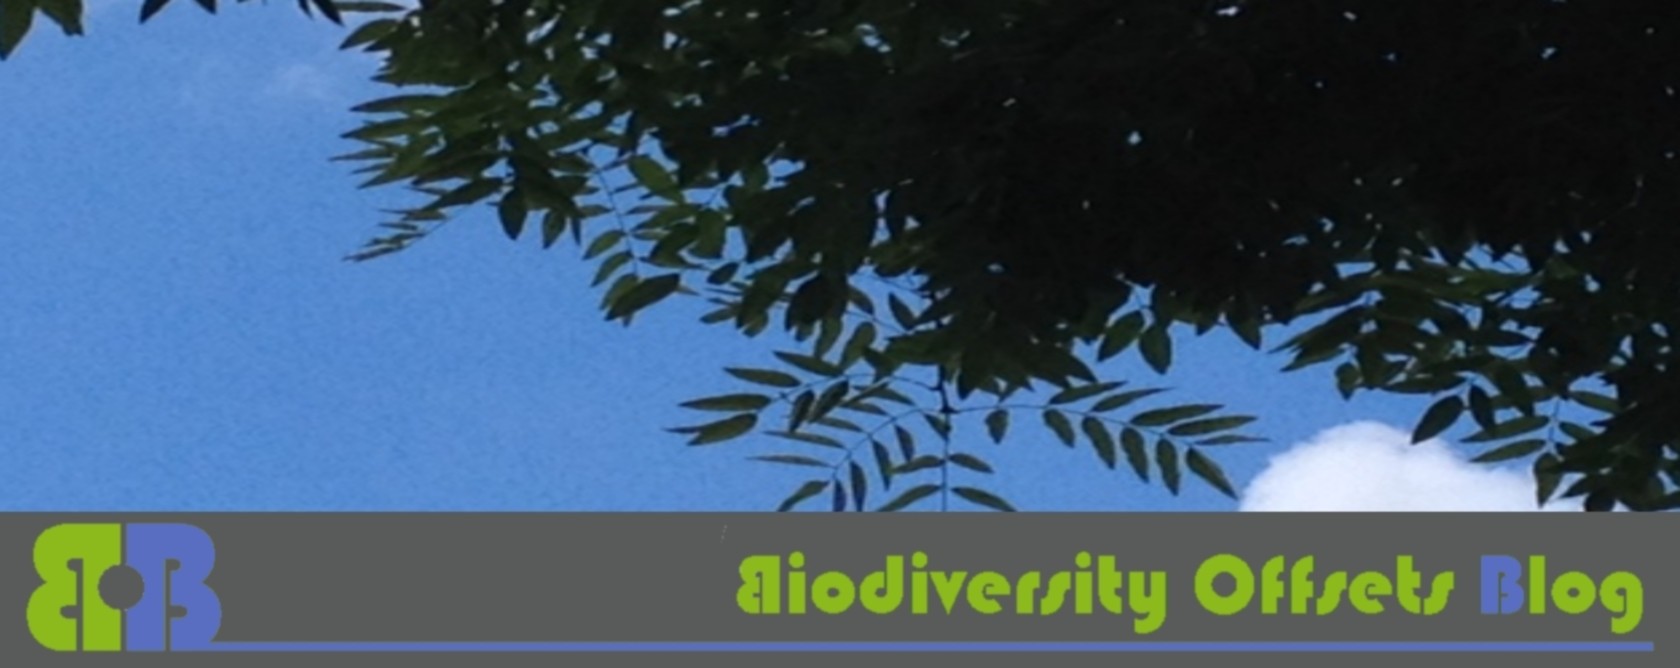 Biodiversity Offsets Blog